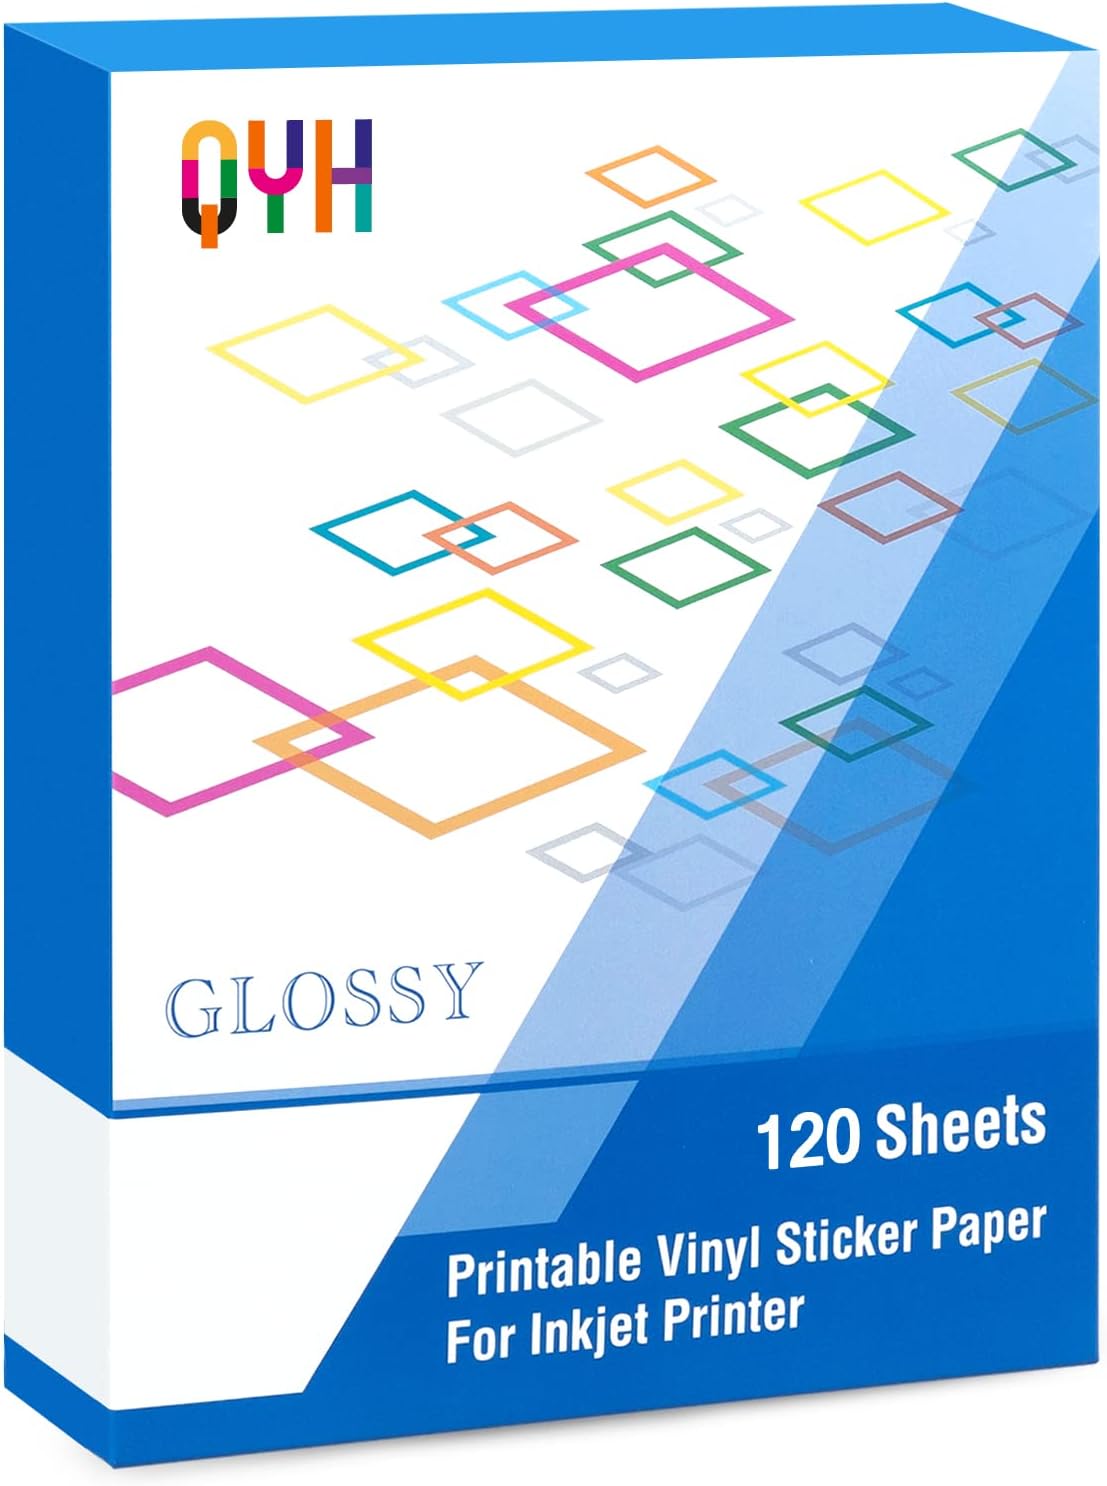 Printable Vinyl Sticker Paper for Inkjet Printer [...]